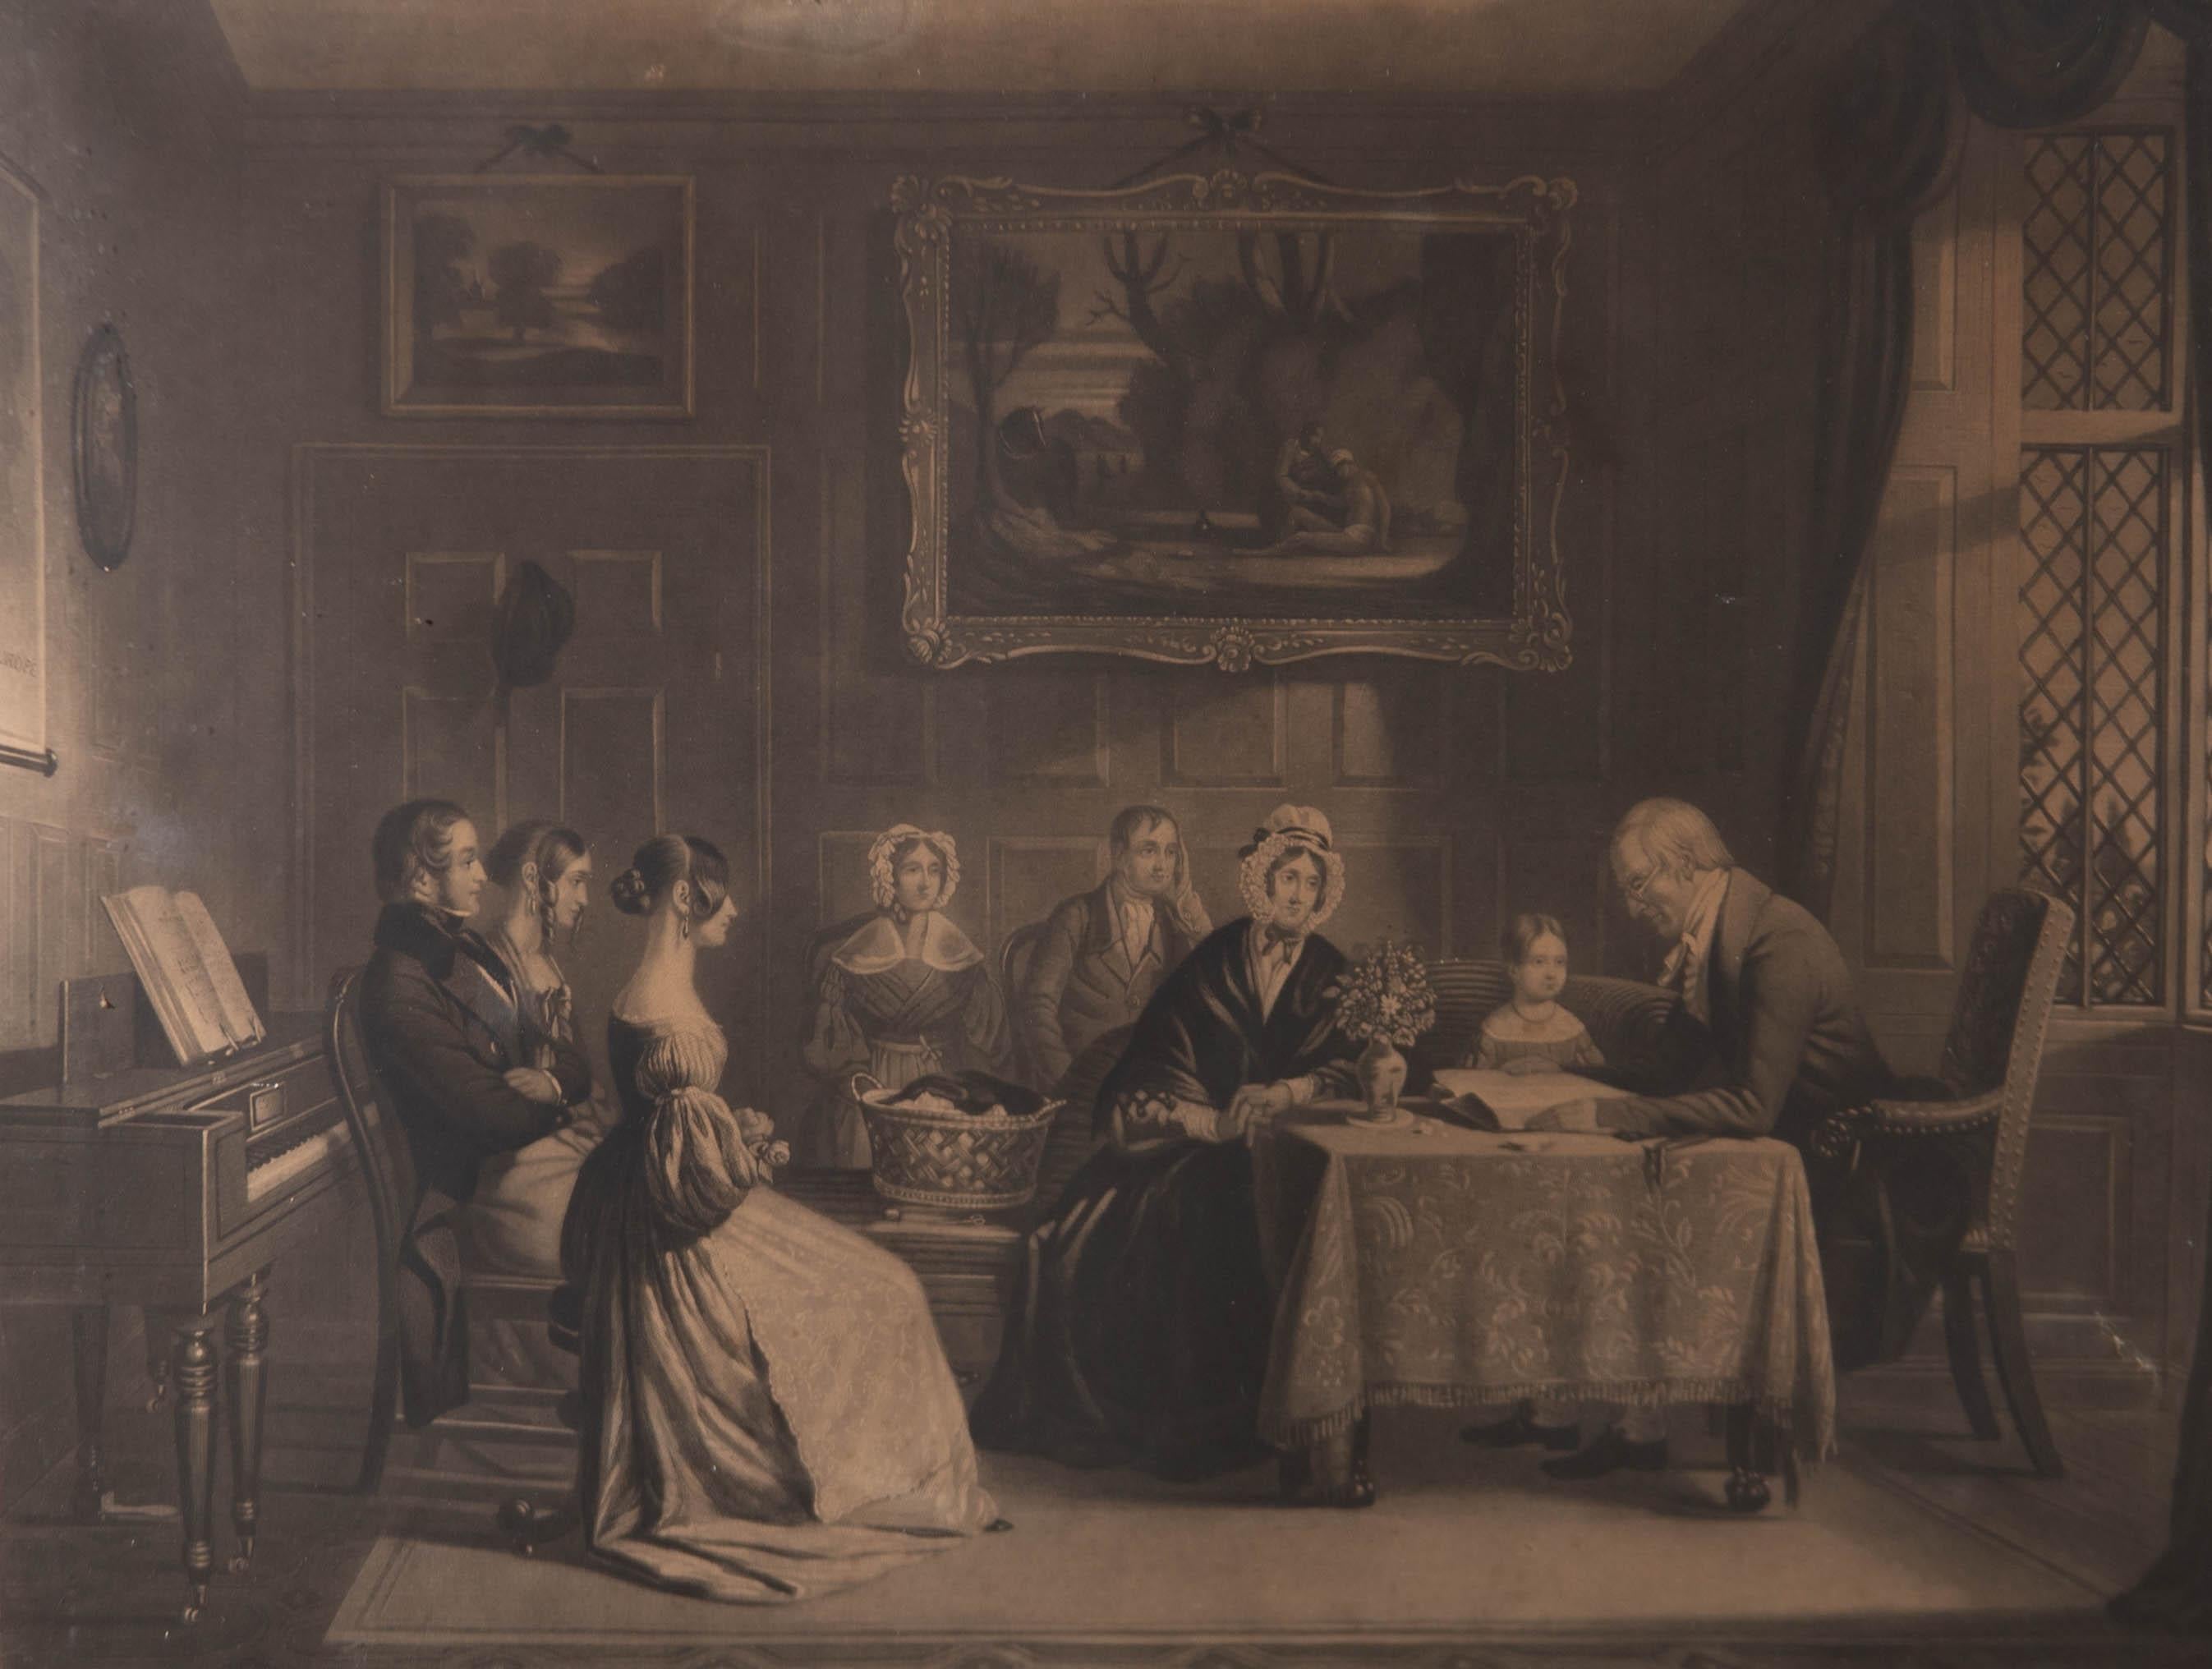 Dieser charmante Druck zeigt eine viktorianische Familie beim Gebet in einem Salon. Das Familienoberhaupt liest aus der Bibel vor, während die Familie aufmerksam zuhört. Der Name des Stechers und des Künstlers ist am unteren Rand aufgedruckt. Gut